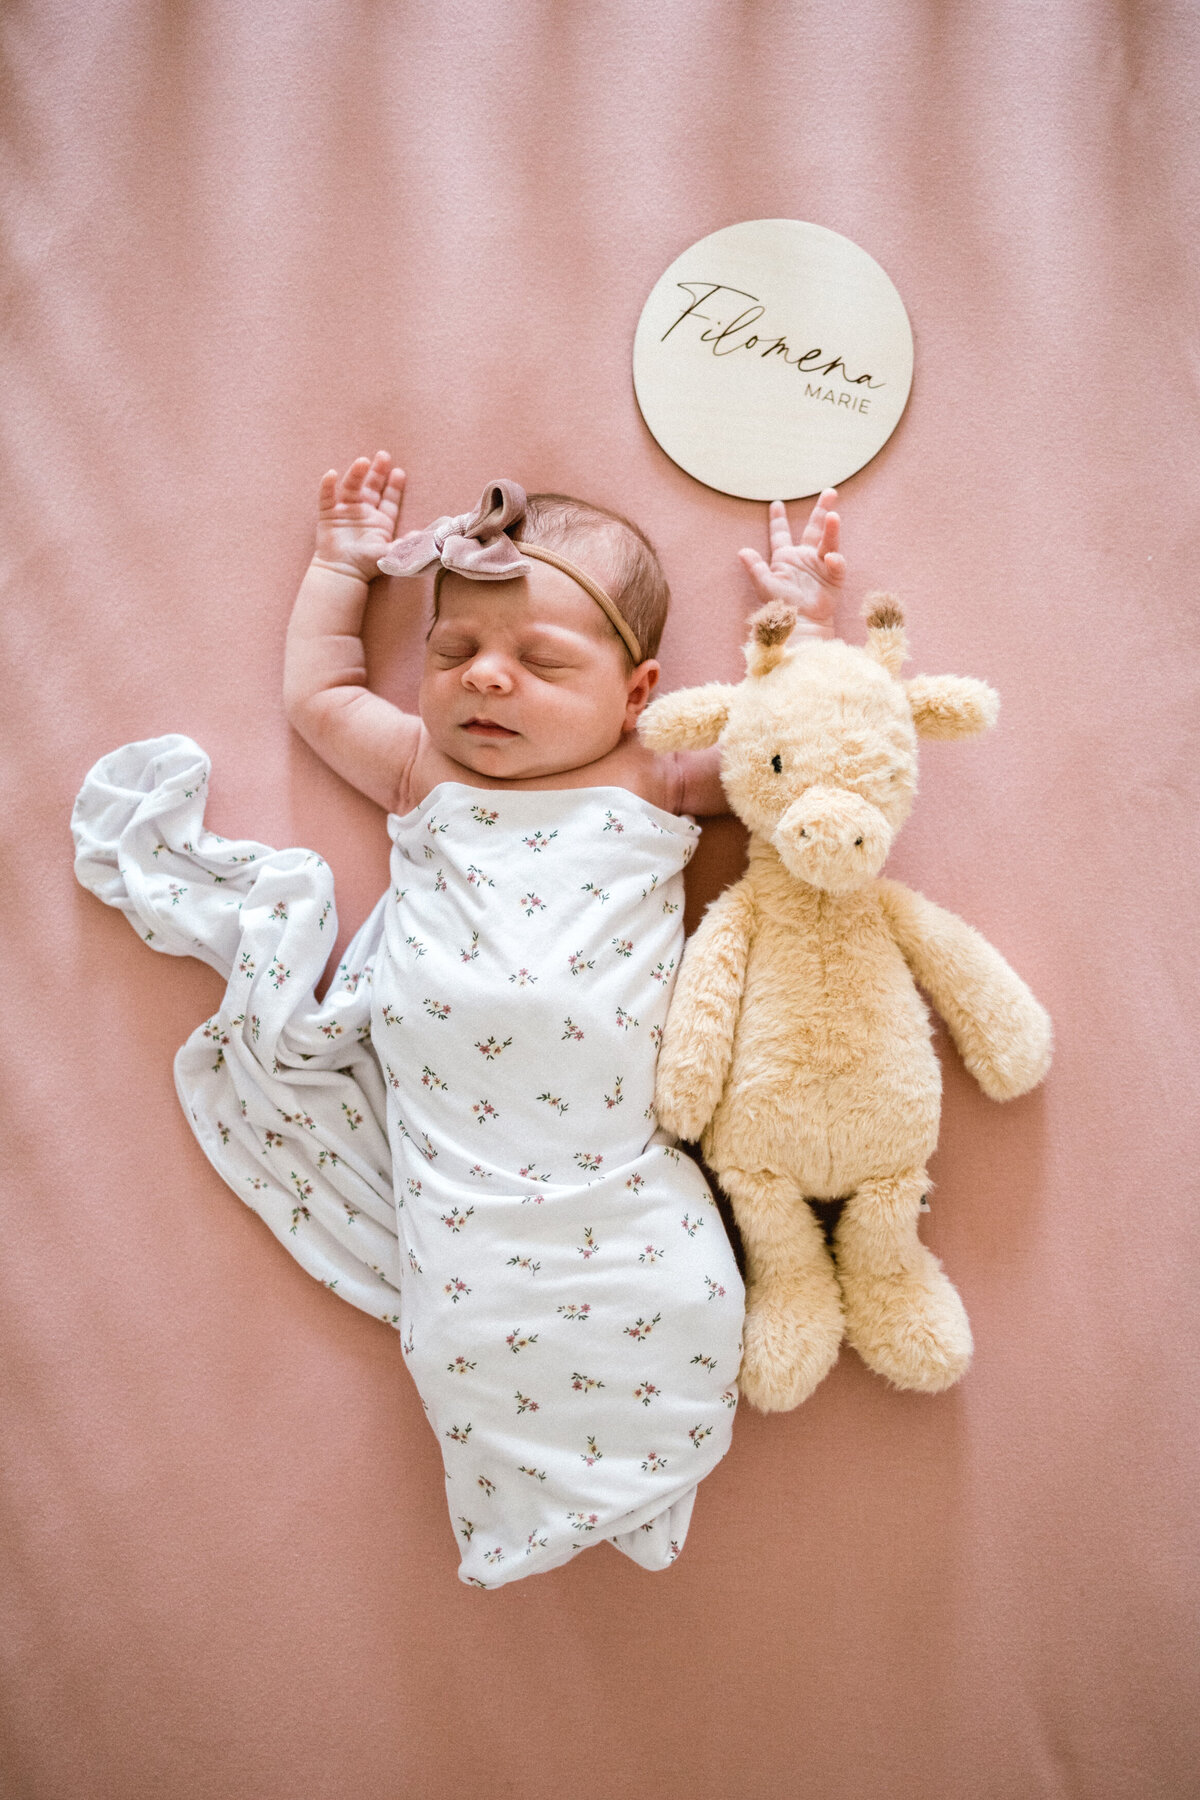 Newborn baby girl laying in crib with stuffed giraffe